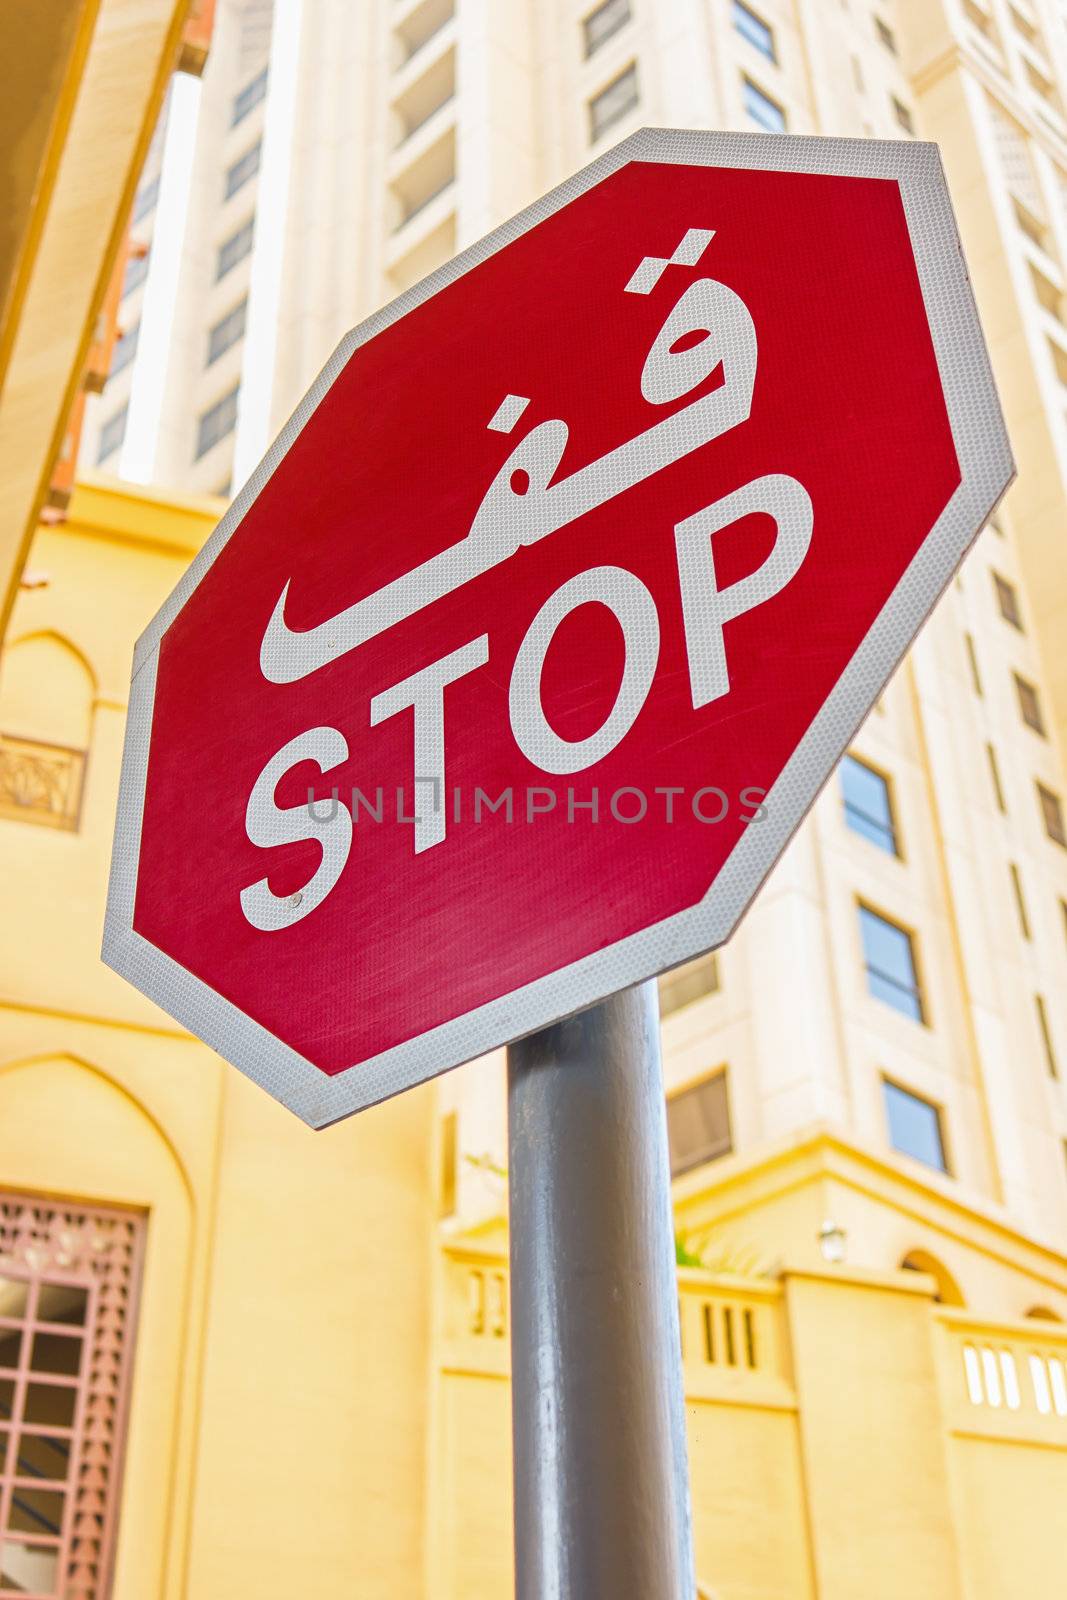 the sign "Stop"  in Dubai UAE nov 16 2012 by oleg_zhukov